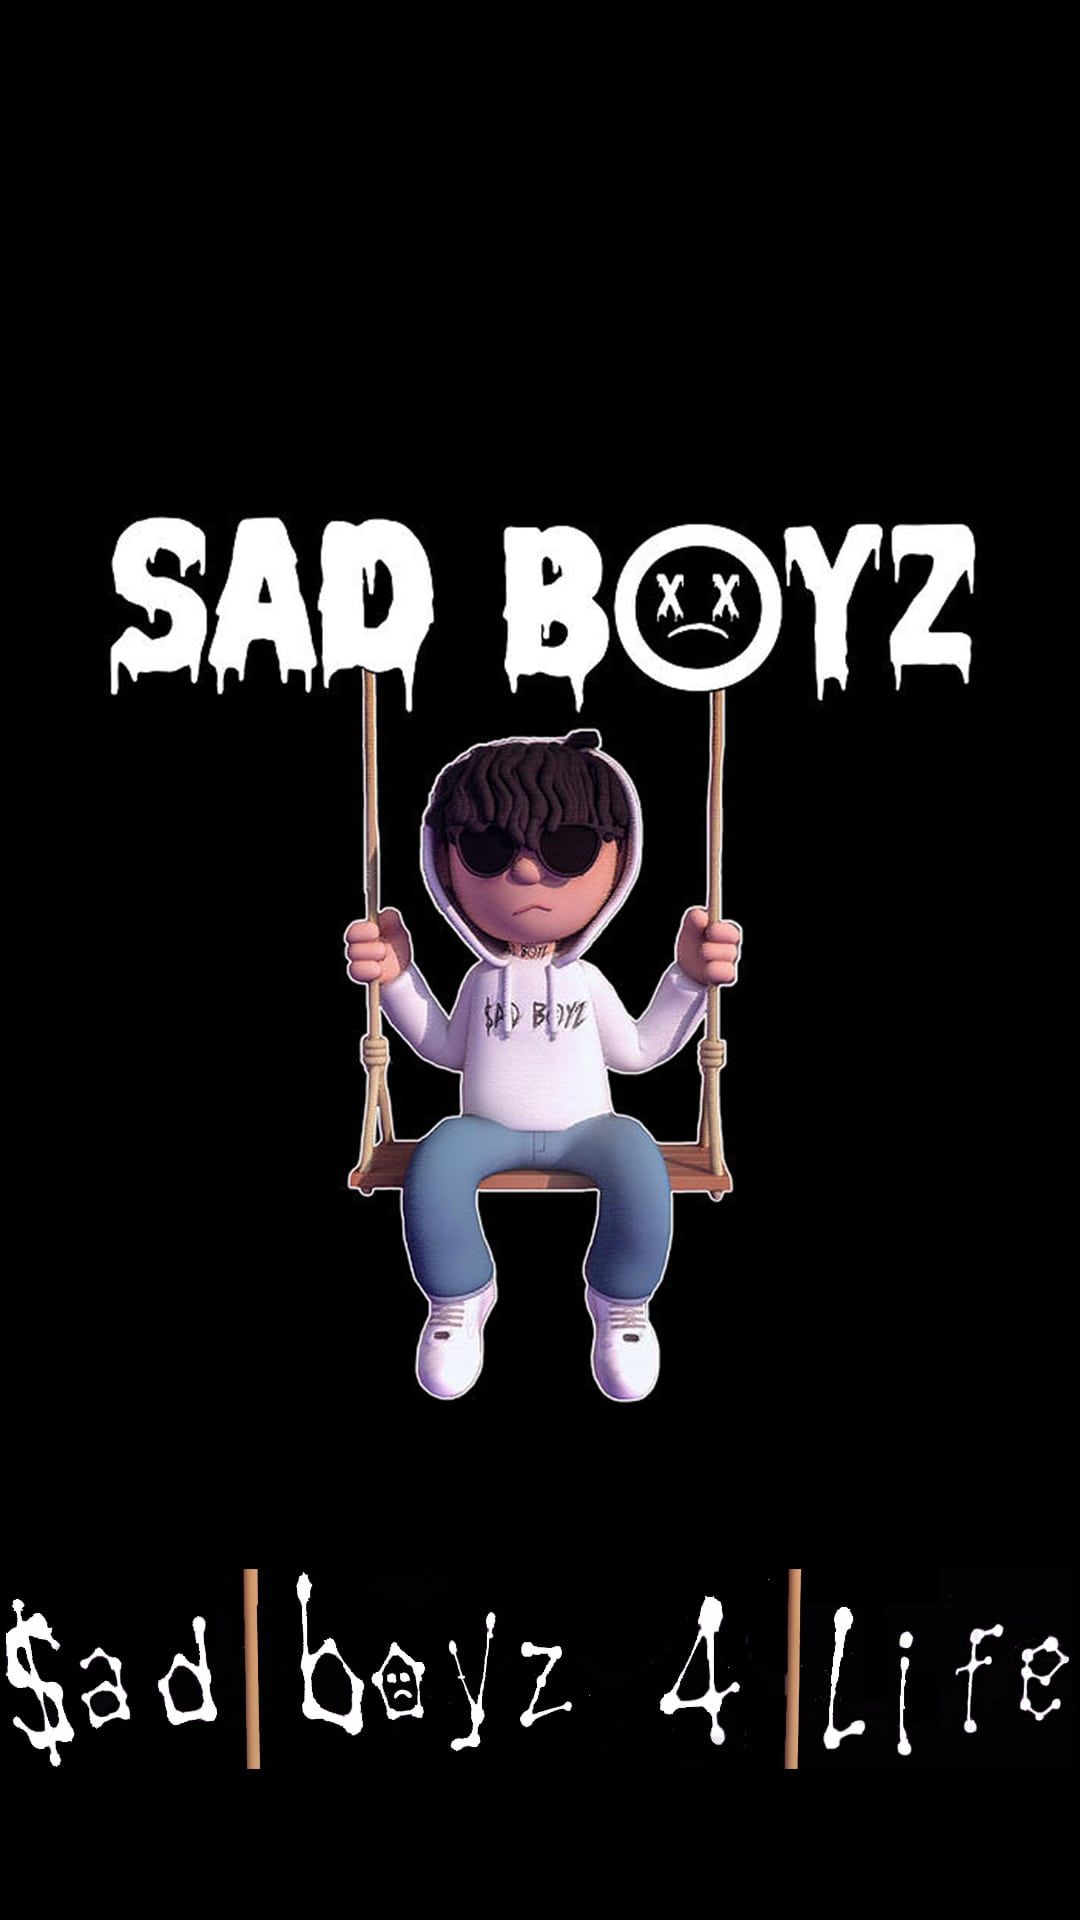 Sad Boyz 4 Life 2 Wallpapers